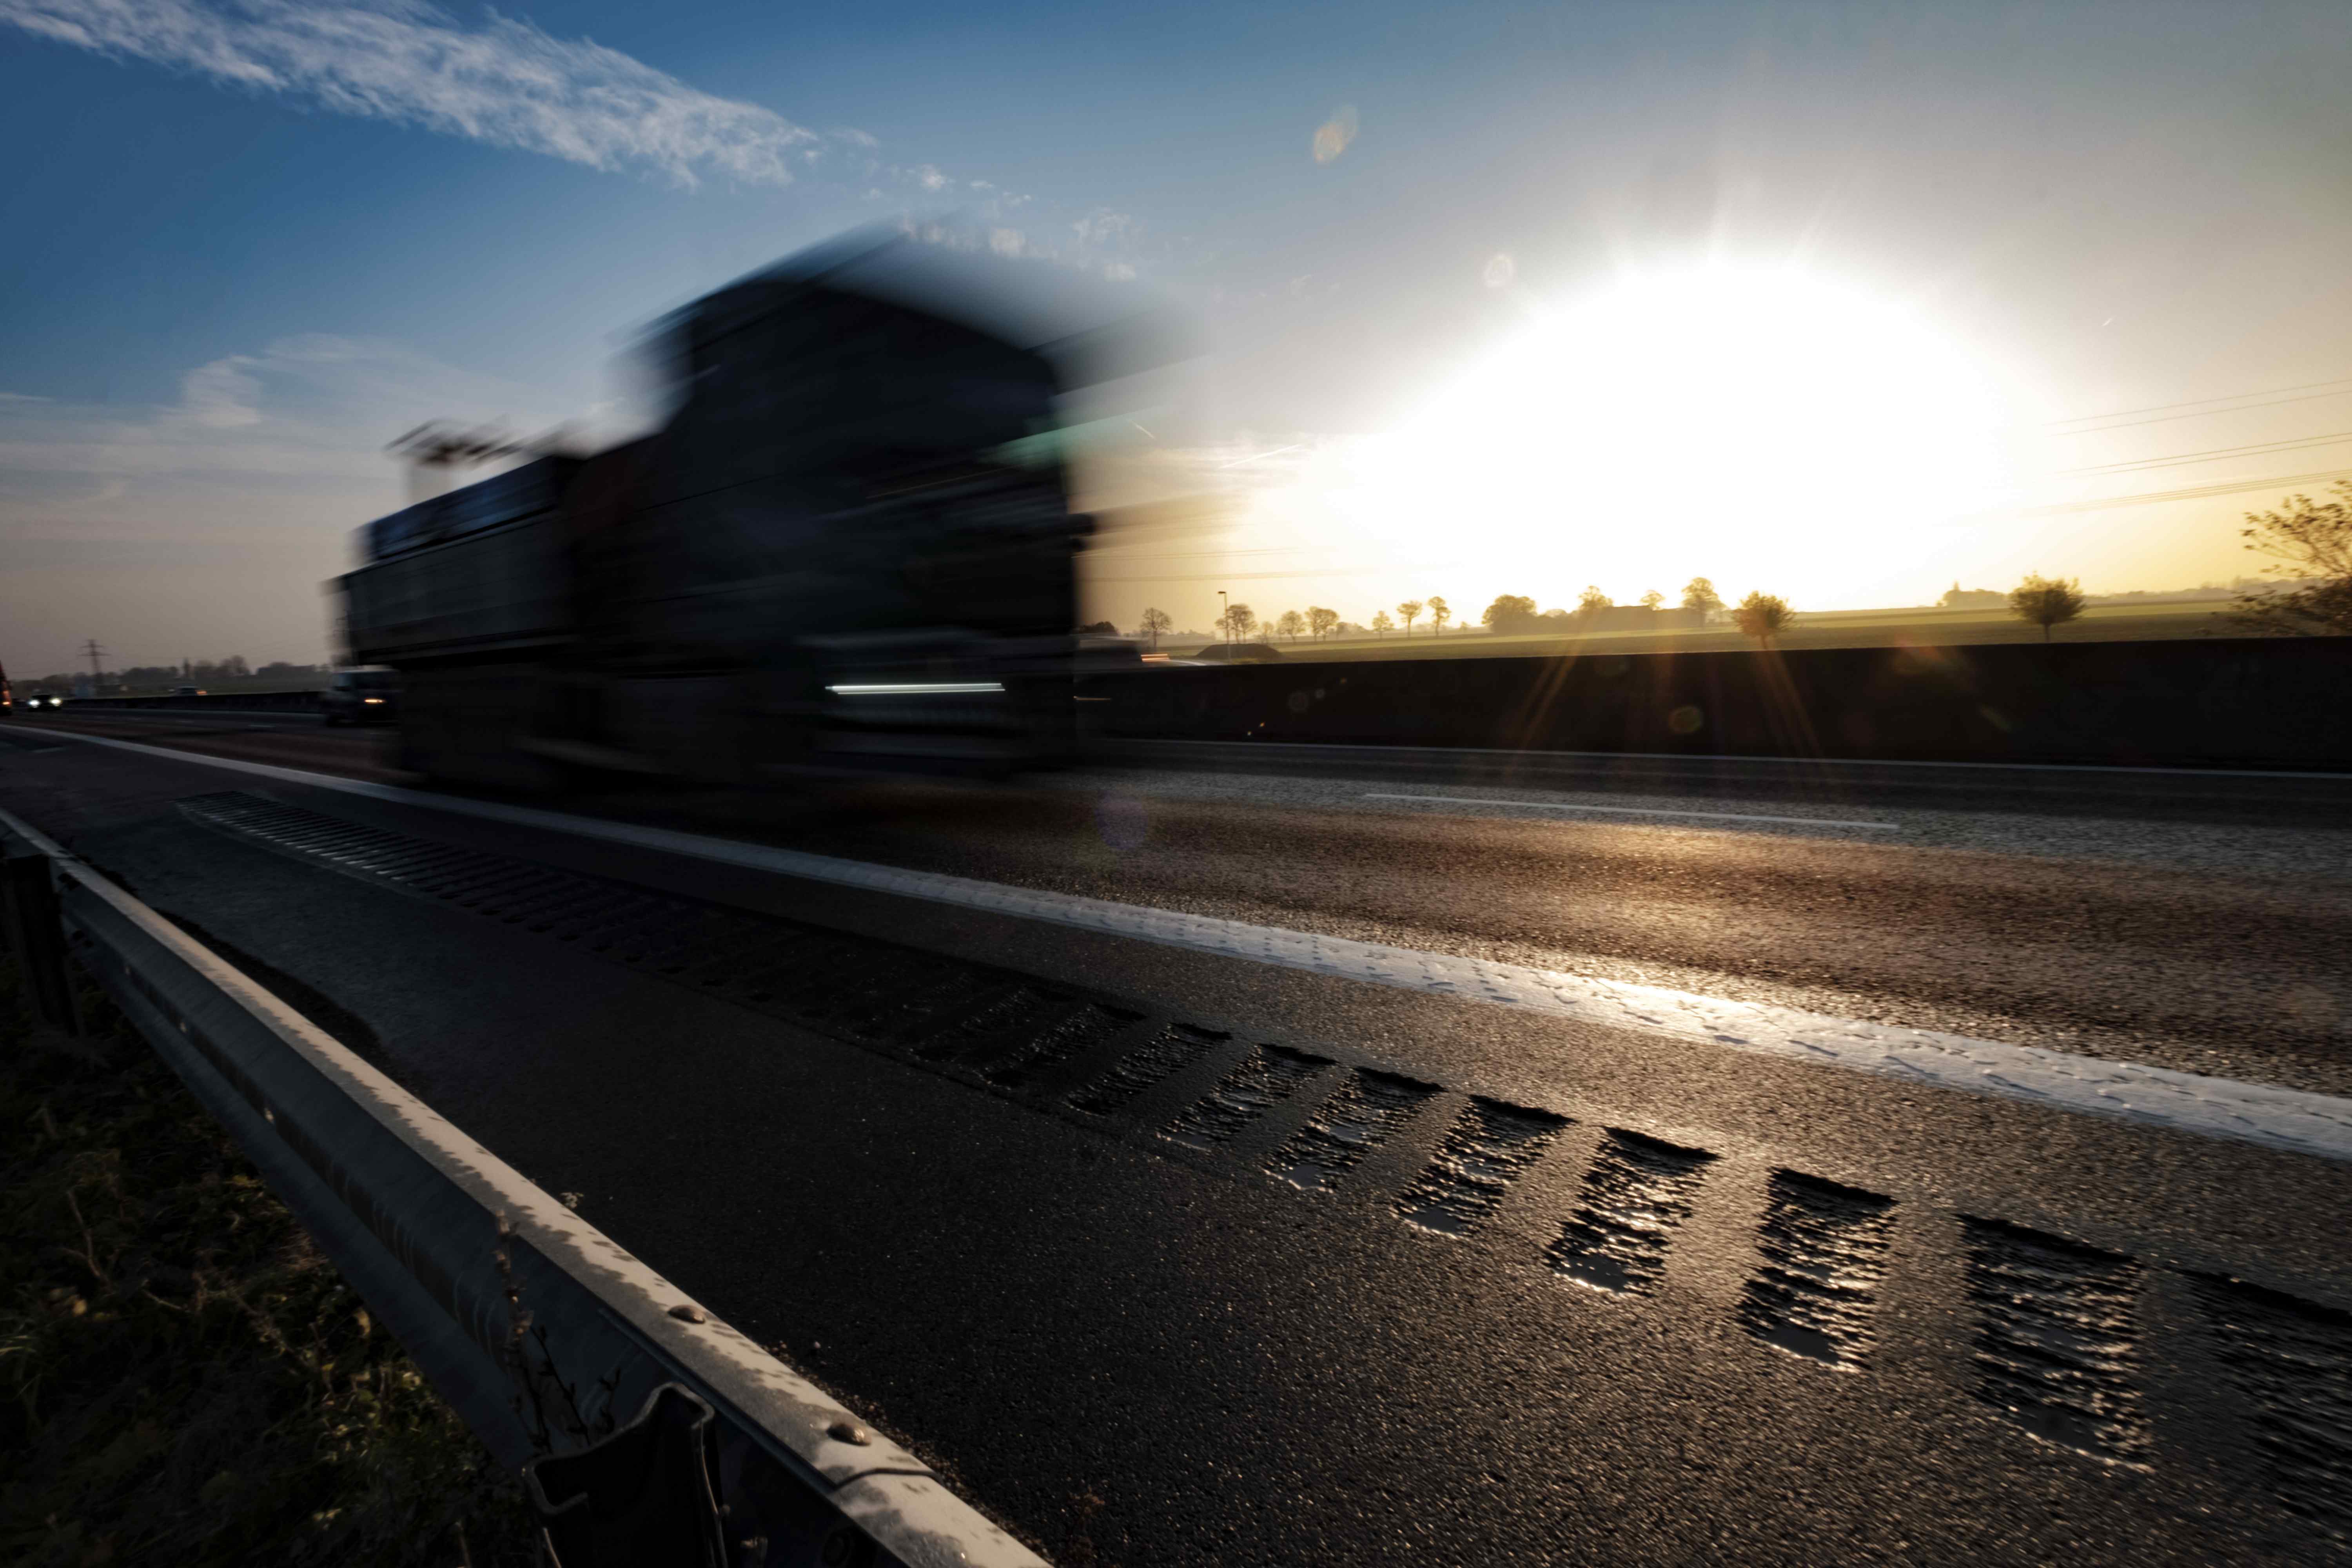 Kan oljeberoende brytas och fossilfrihet uppnås? Trafik på motorväg, under grynings- eller skymningshimmel. Foto av Håkan Röjder.